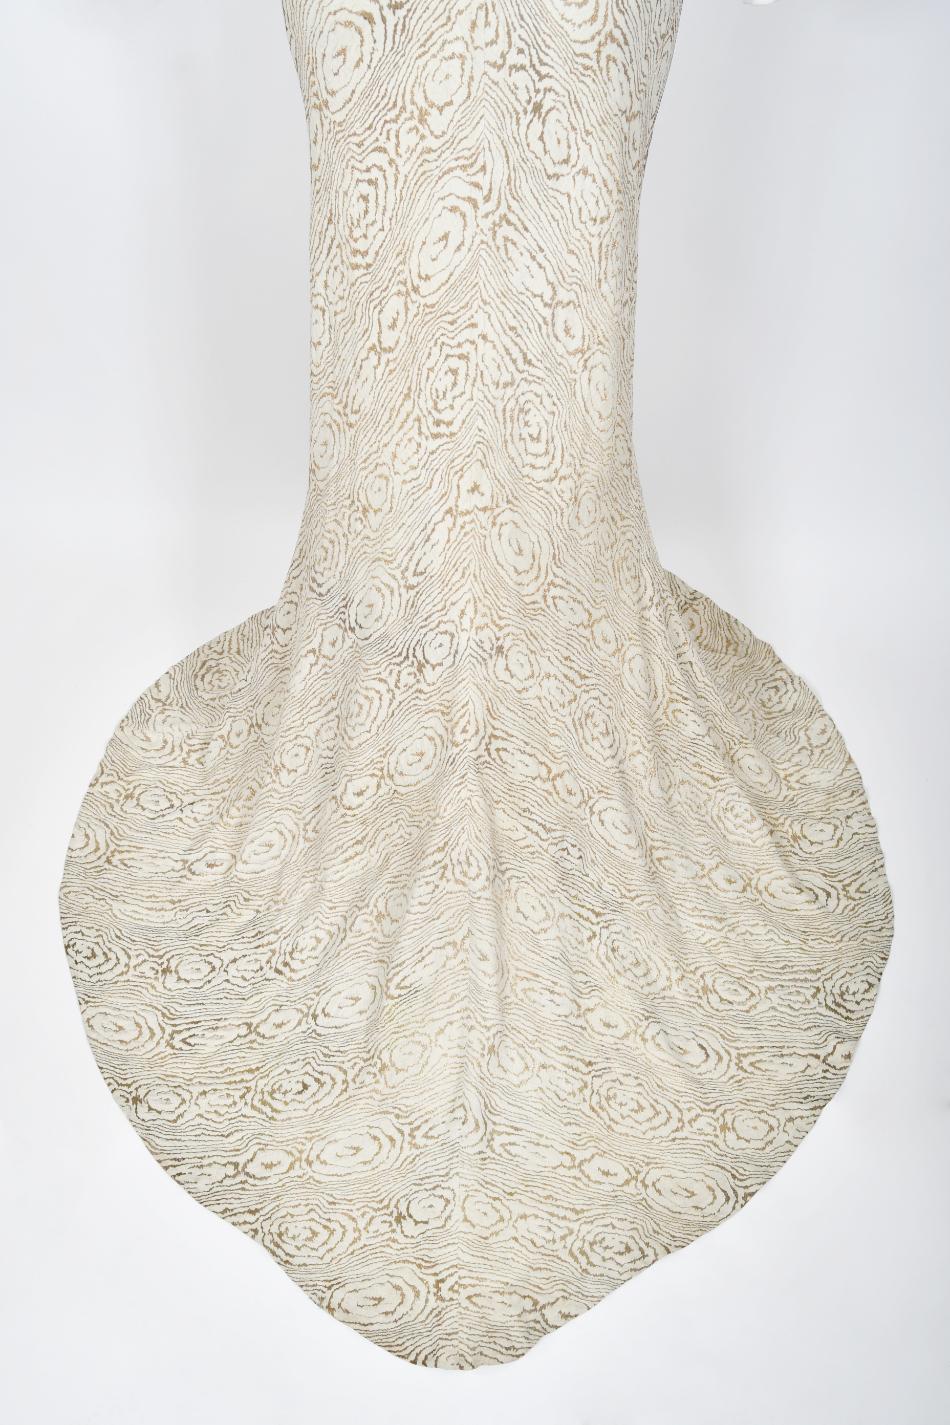 1930's Metallic Wood-Patterned Lamé Deco Appliqué Bias-Cut Trained Bridal Gown  13